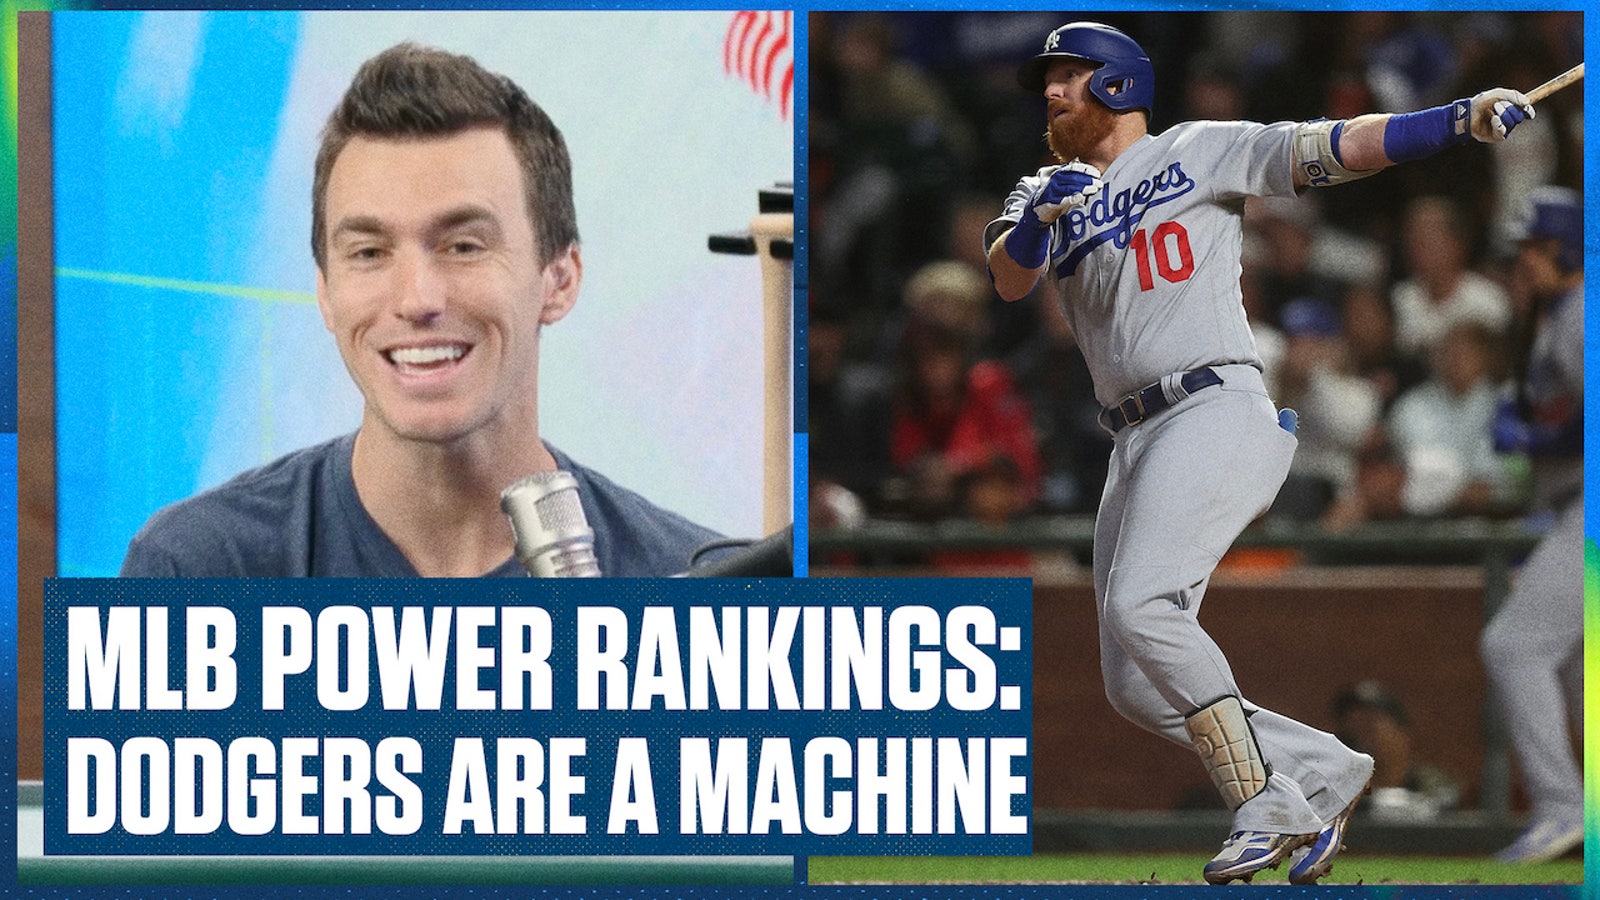 MLB Power Rankings: Astros, Dodgers STILL top teams in baseball